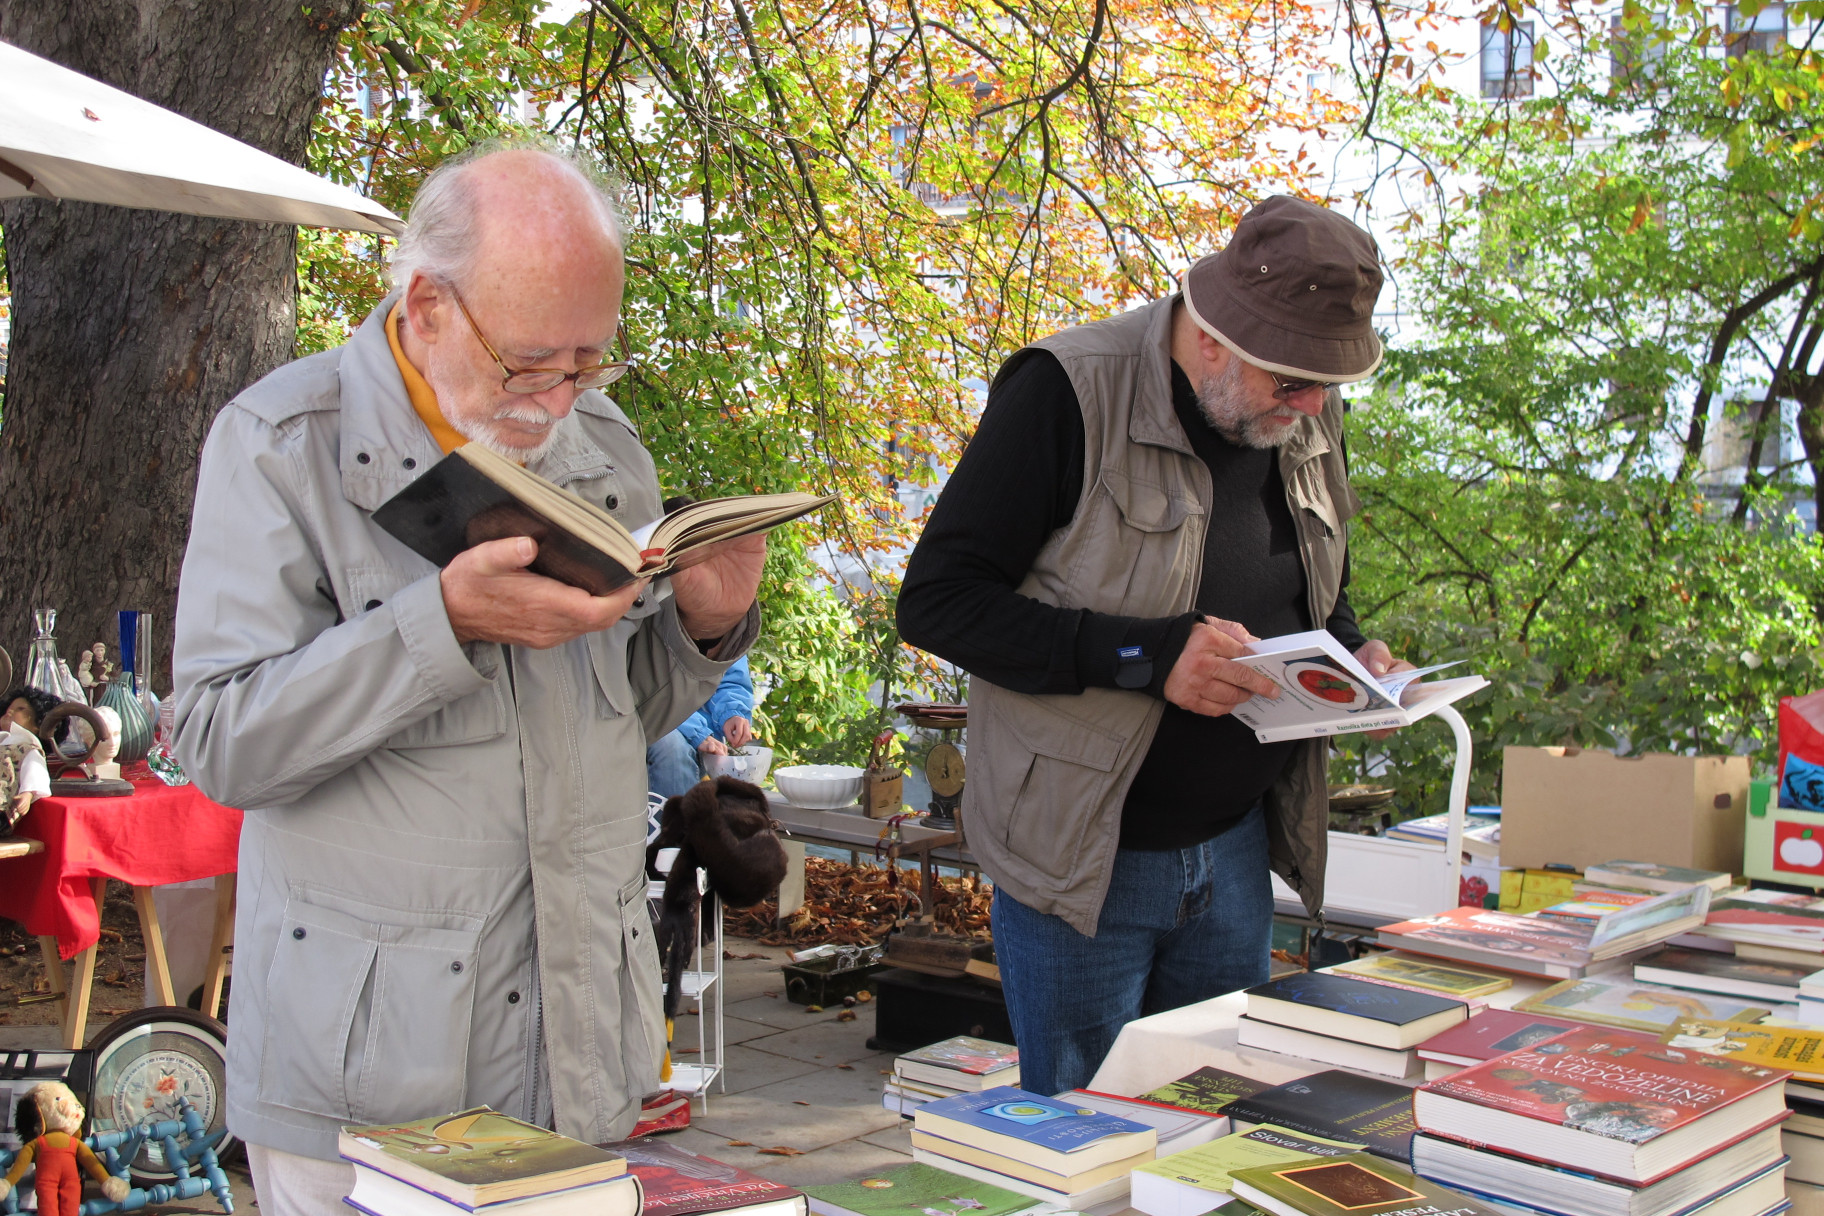 older-men-browsing-books-at-open-air-market